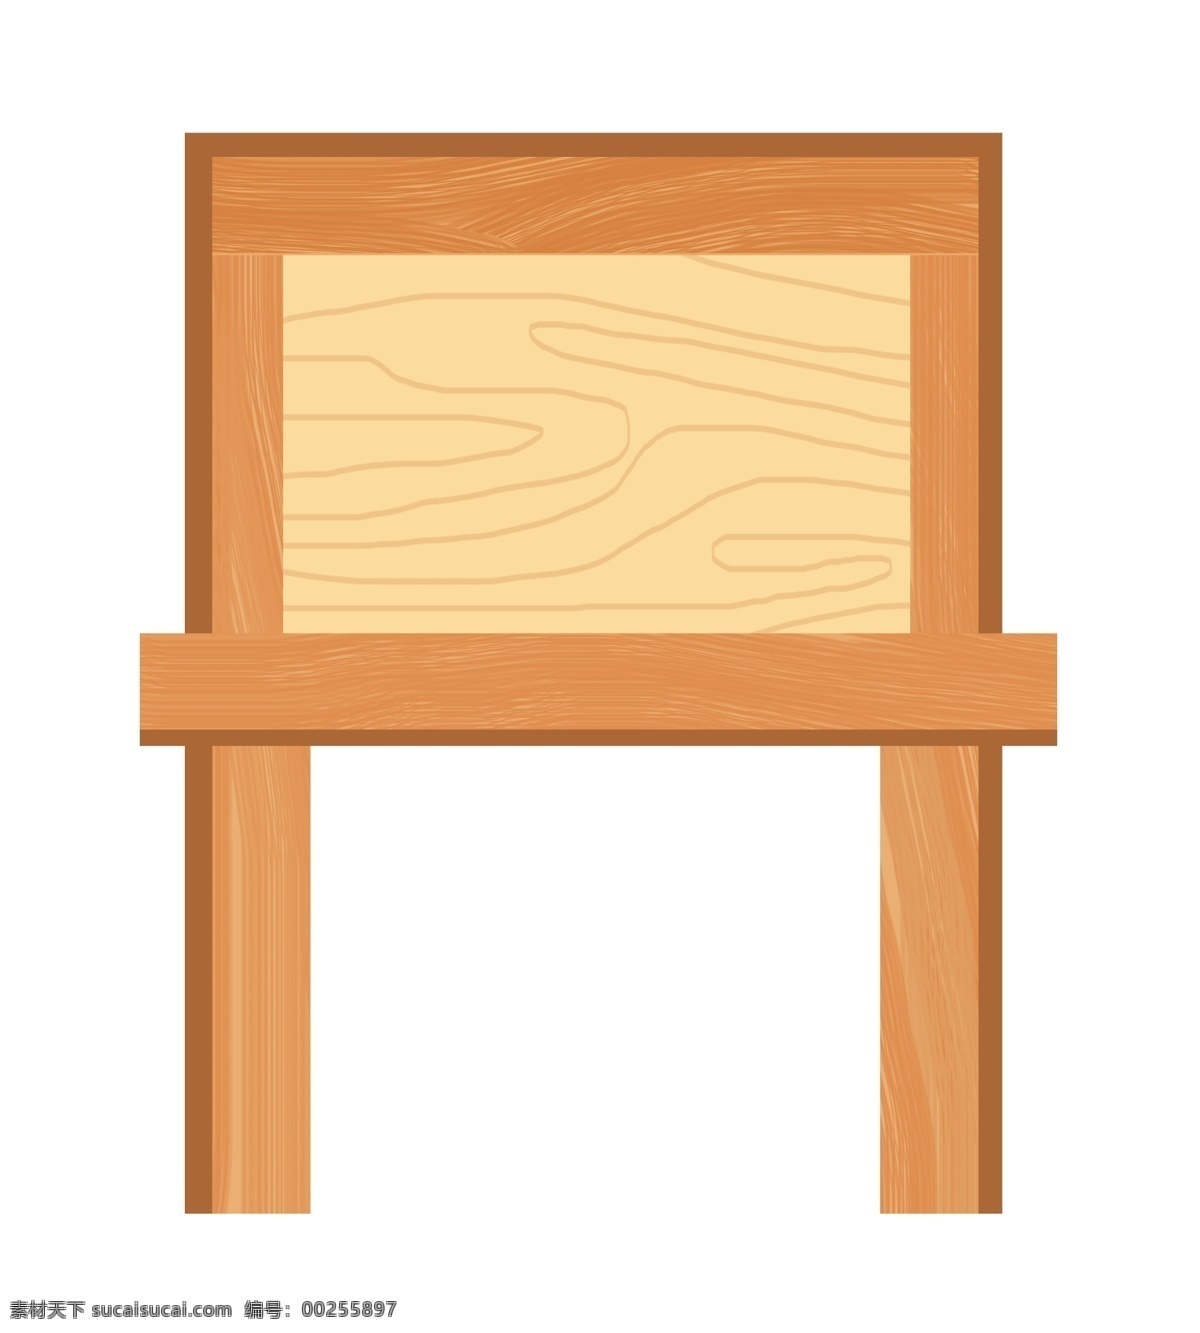 棕色 木质 木板 插画 棕色的木板 卡通插画 木板插画 木纹插画 木质插画 实木产品 立着的木板